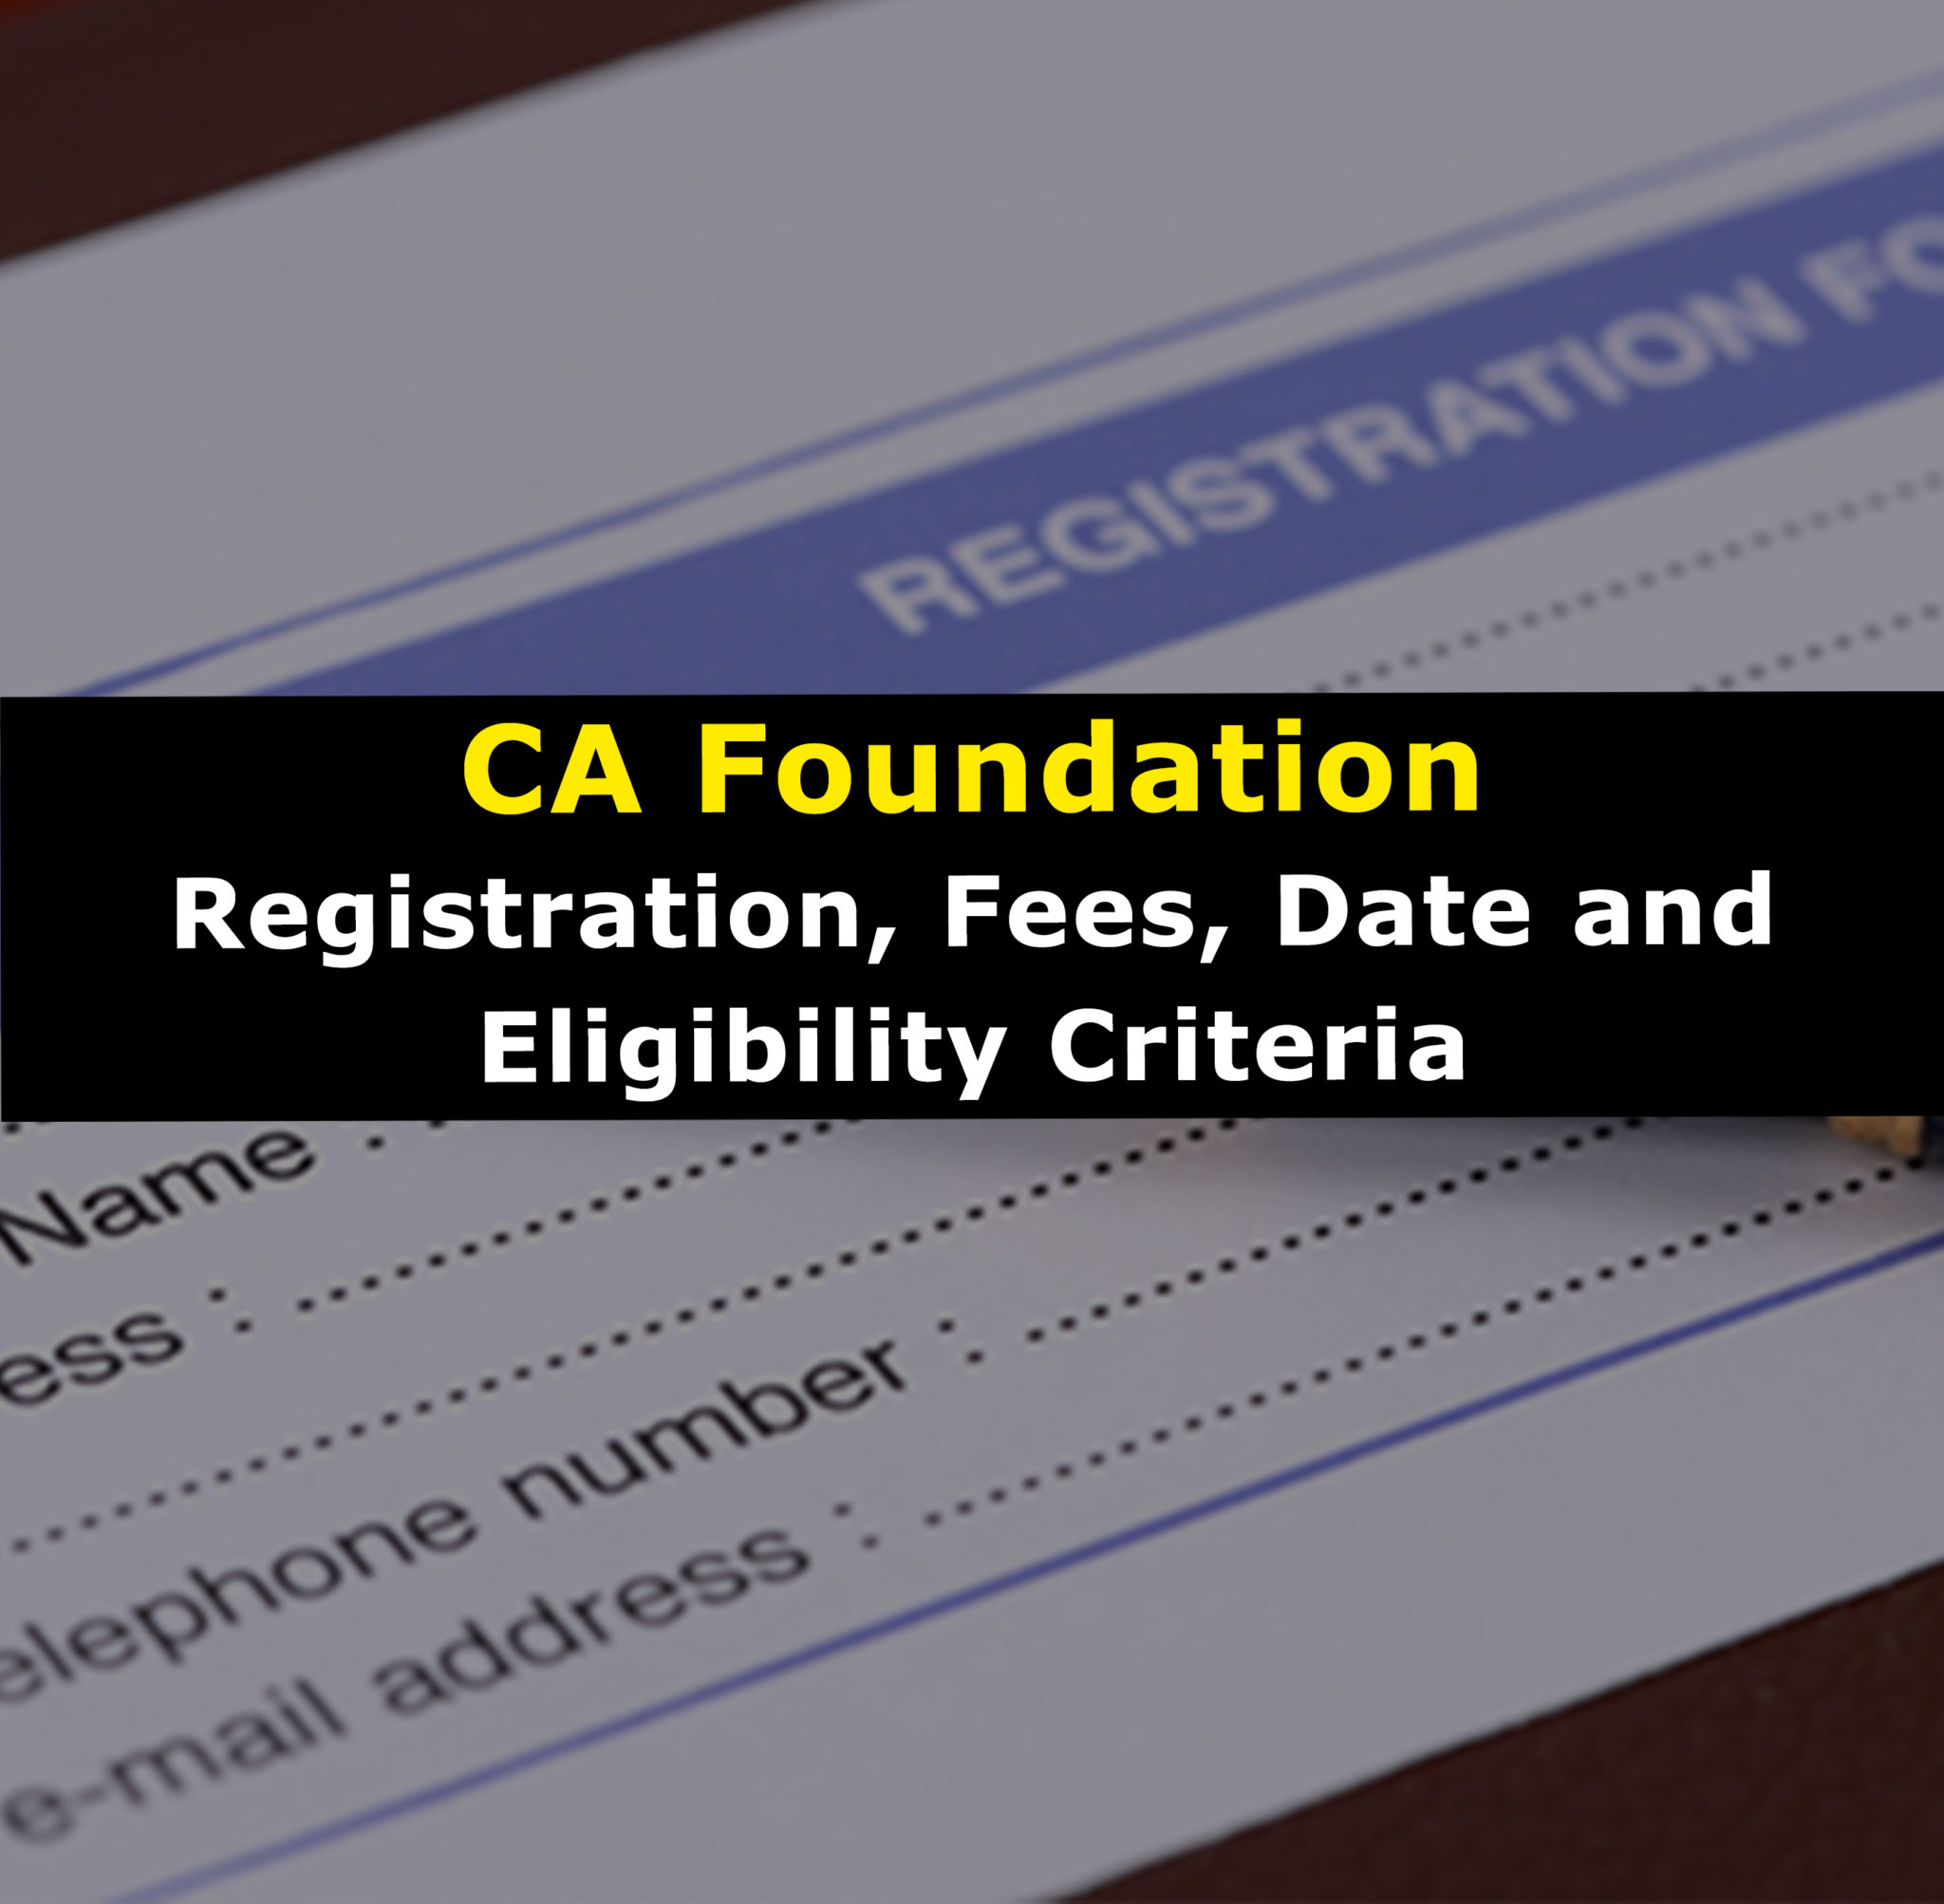 ICAI CA Foundation Registration process for 2019